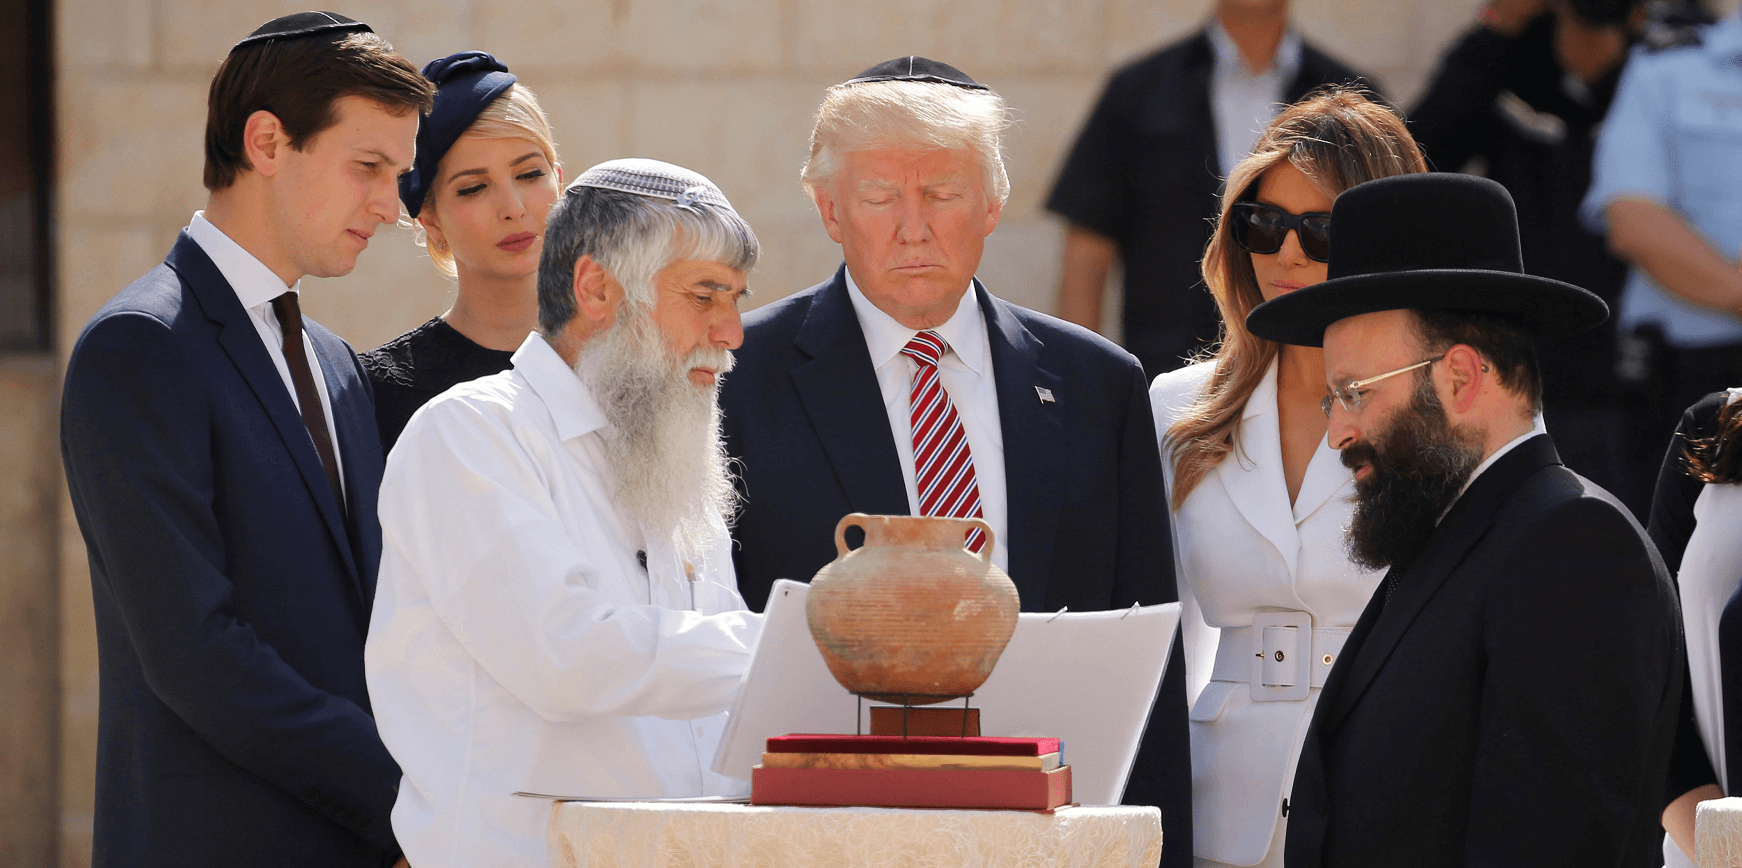 El rabino del muro,Shmuel Ravinovich, acompañó a los miembros de la familia Trump